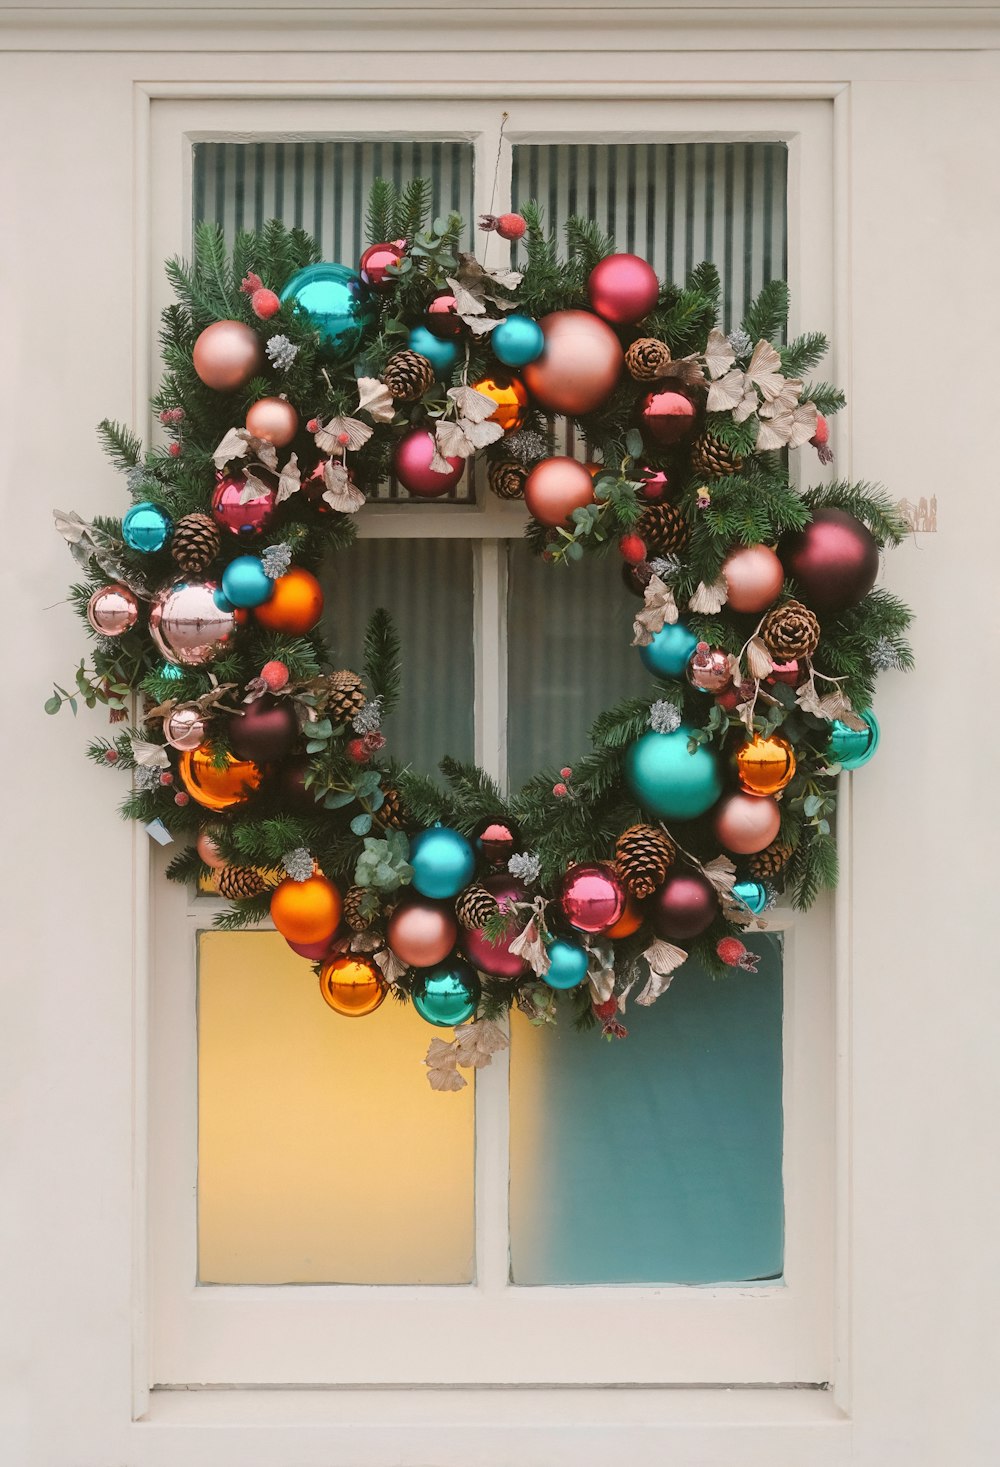 a christmas wreath on a window sill